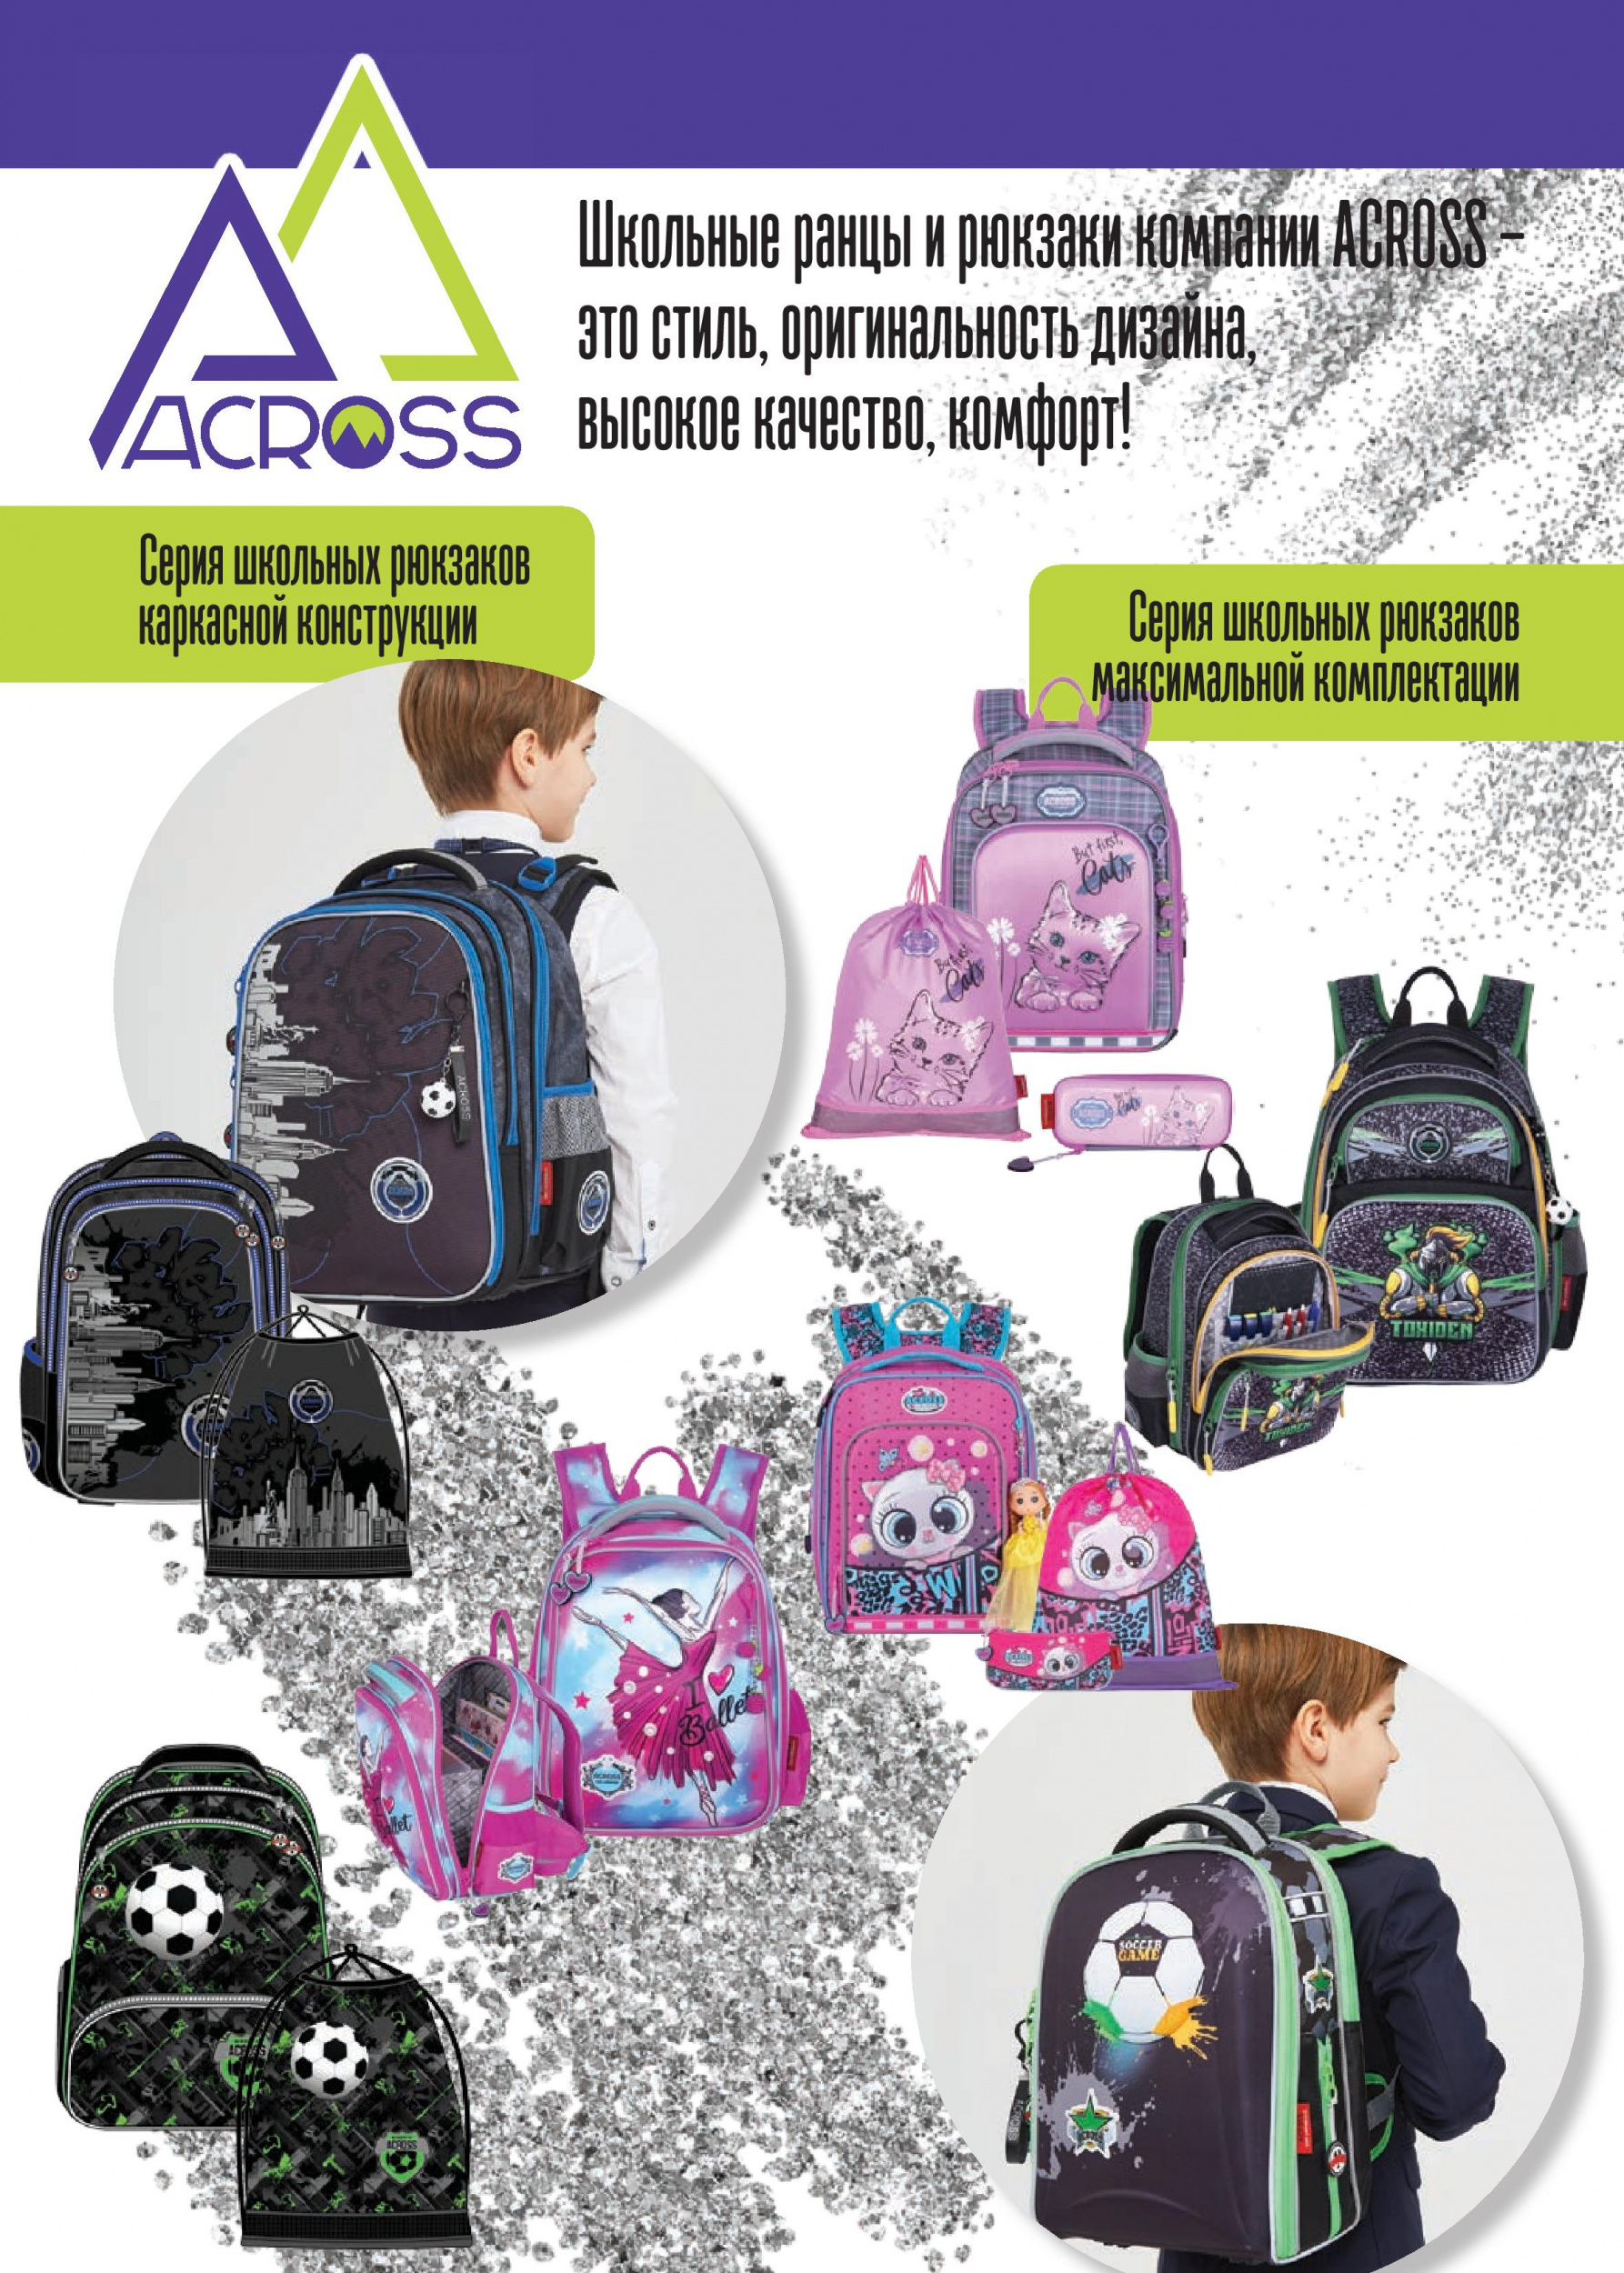 Школьные ранцы и рюкзаки компании ACROSS –  это стиль, оригинальность дизайна, высокое качество, комфорт!